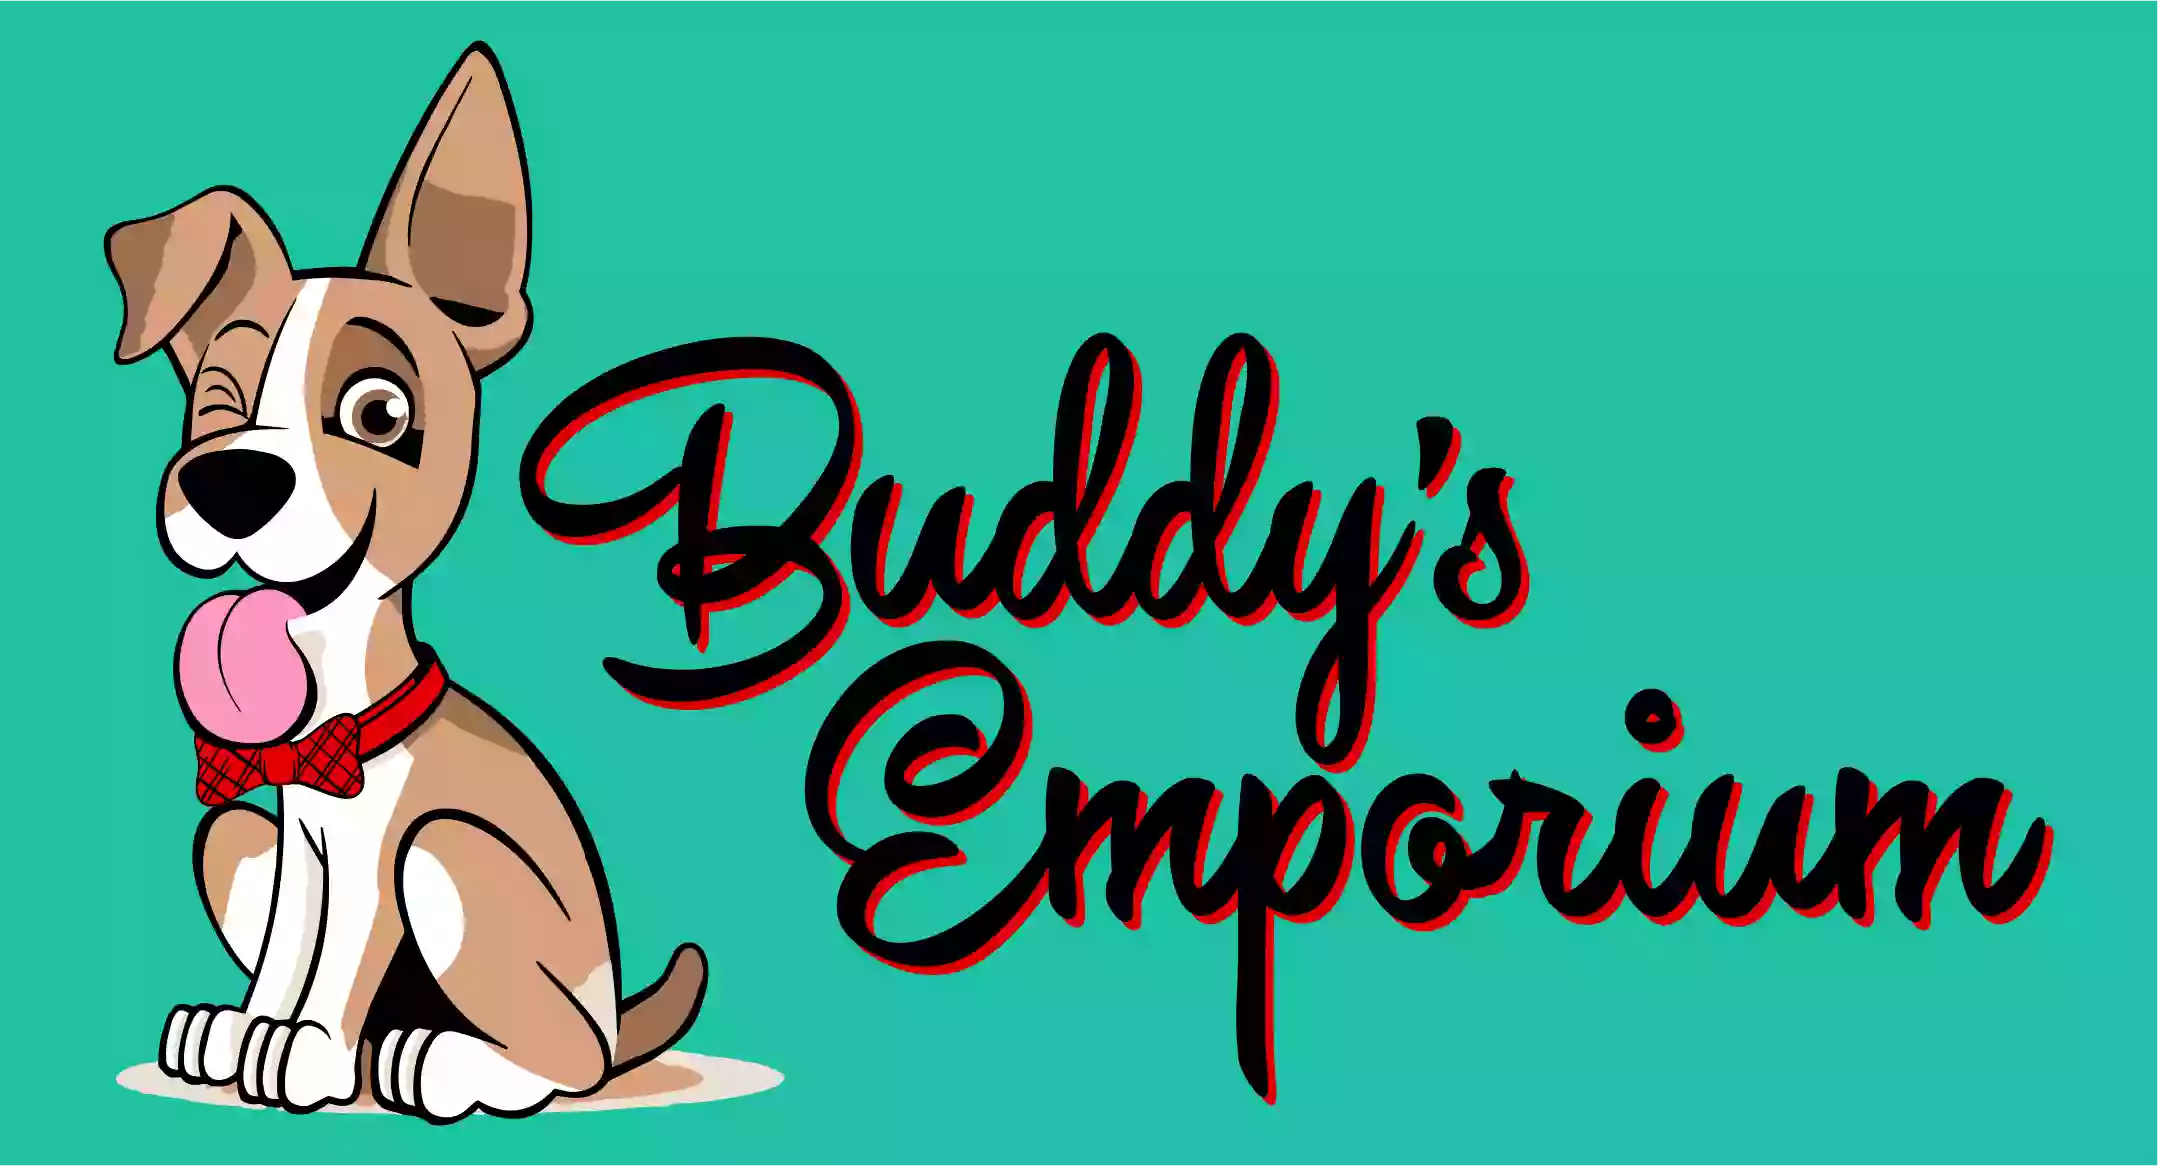 Buddy's Emporium, LLC